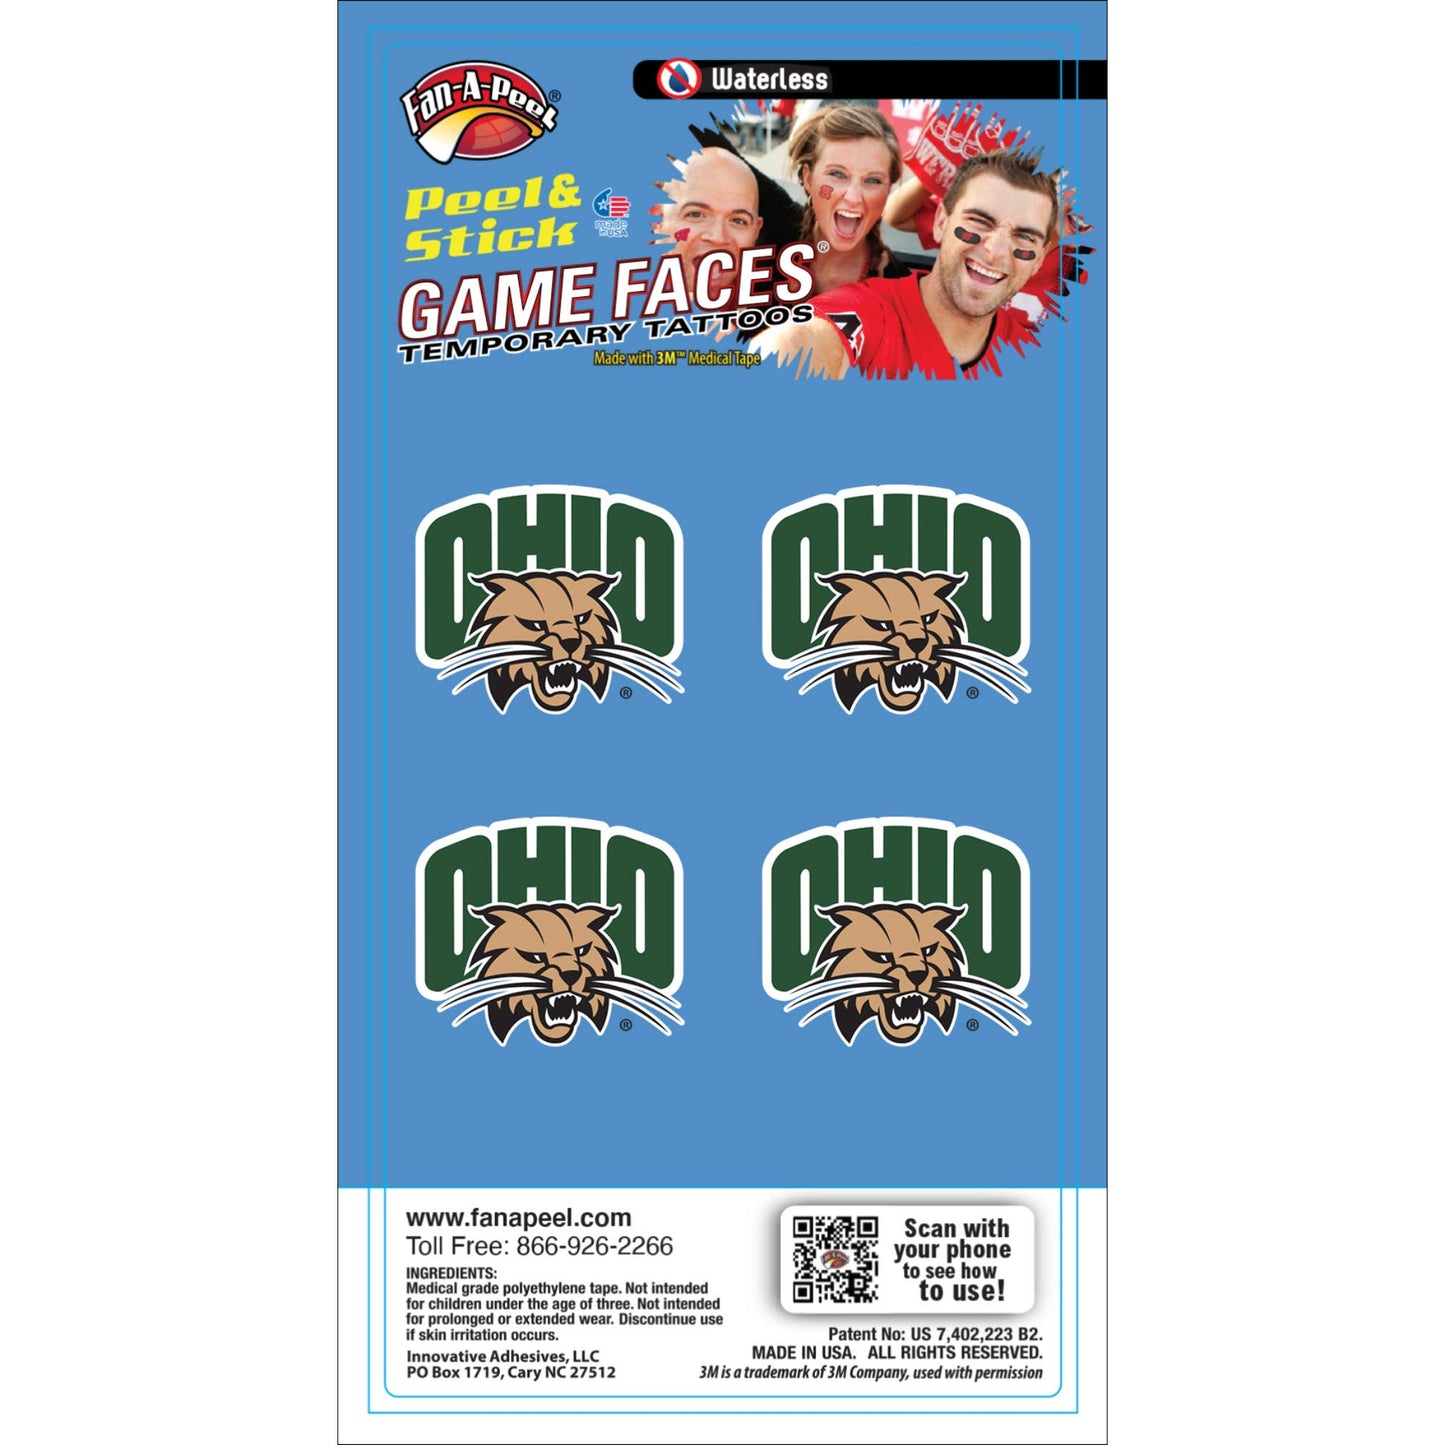 Fanapeel / Gamefaces - Ohio University Game Faces® Temporary Tattoos